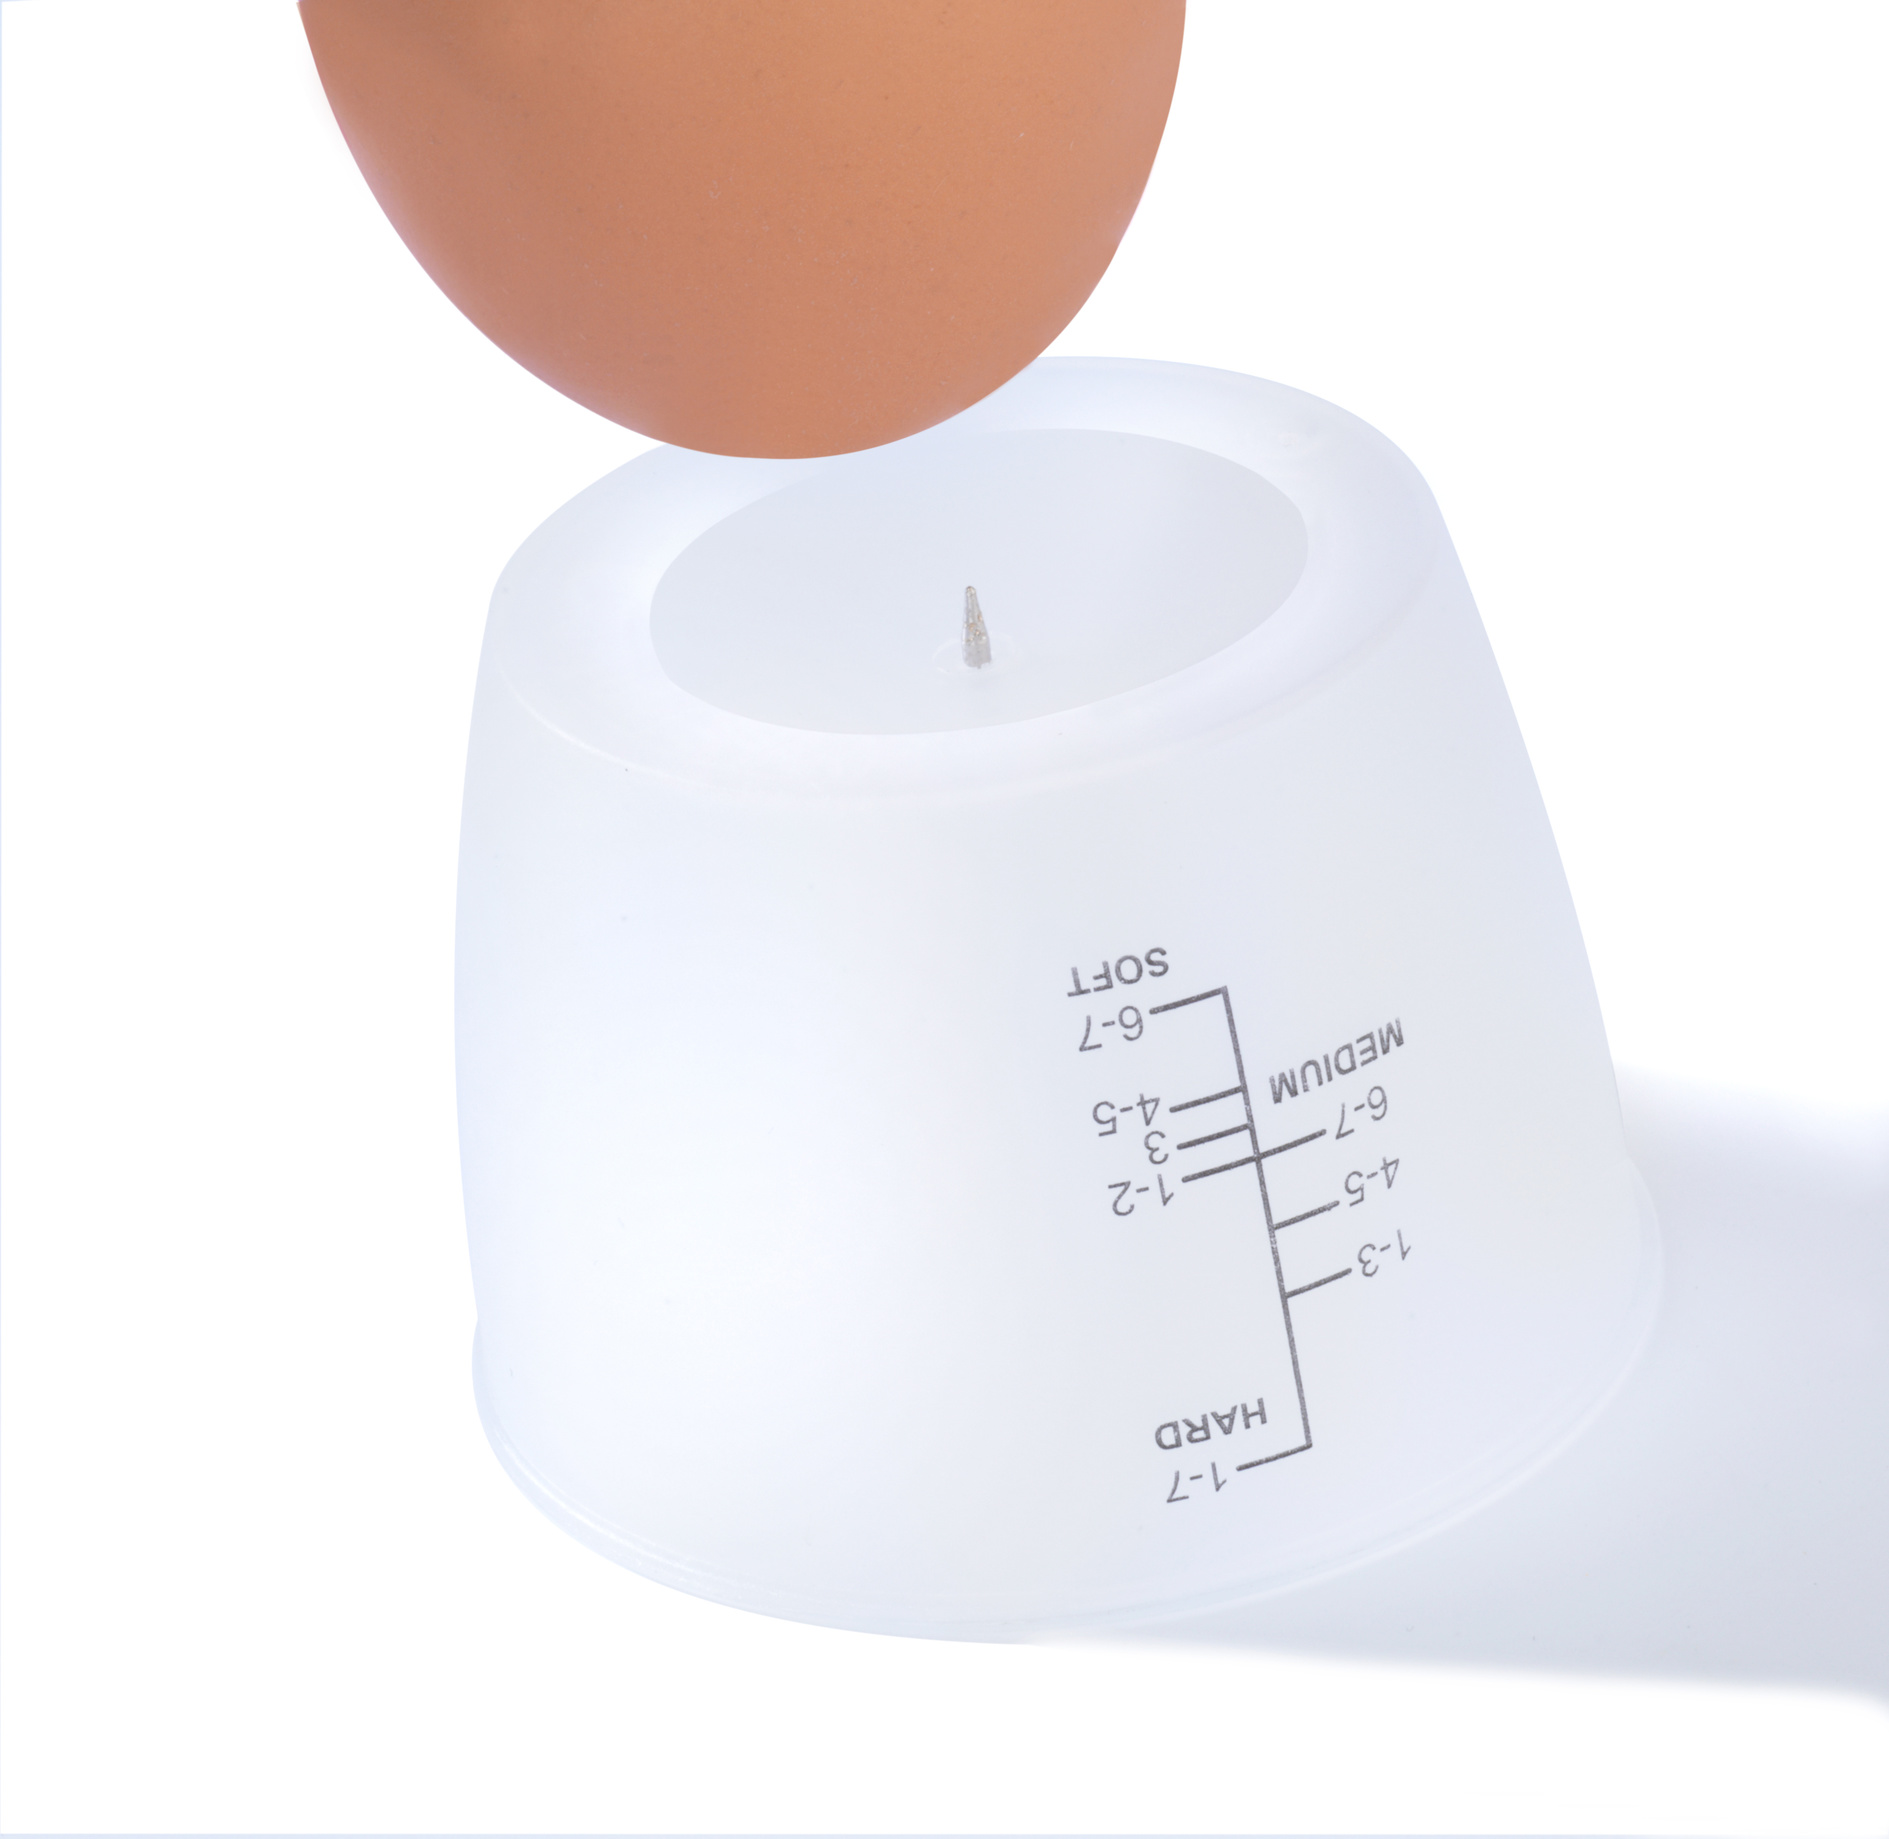 6 Rührei, Omelett PETRA Eier Elektrischer Kochen, Pochieren, Eierkocher 6) Eierkocher(Anzahl Eier: - - für Spülmaschinenfest